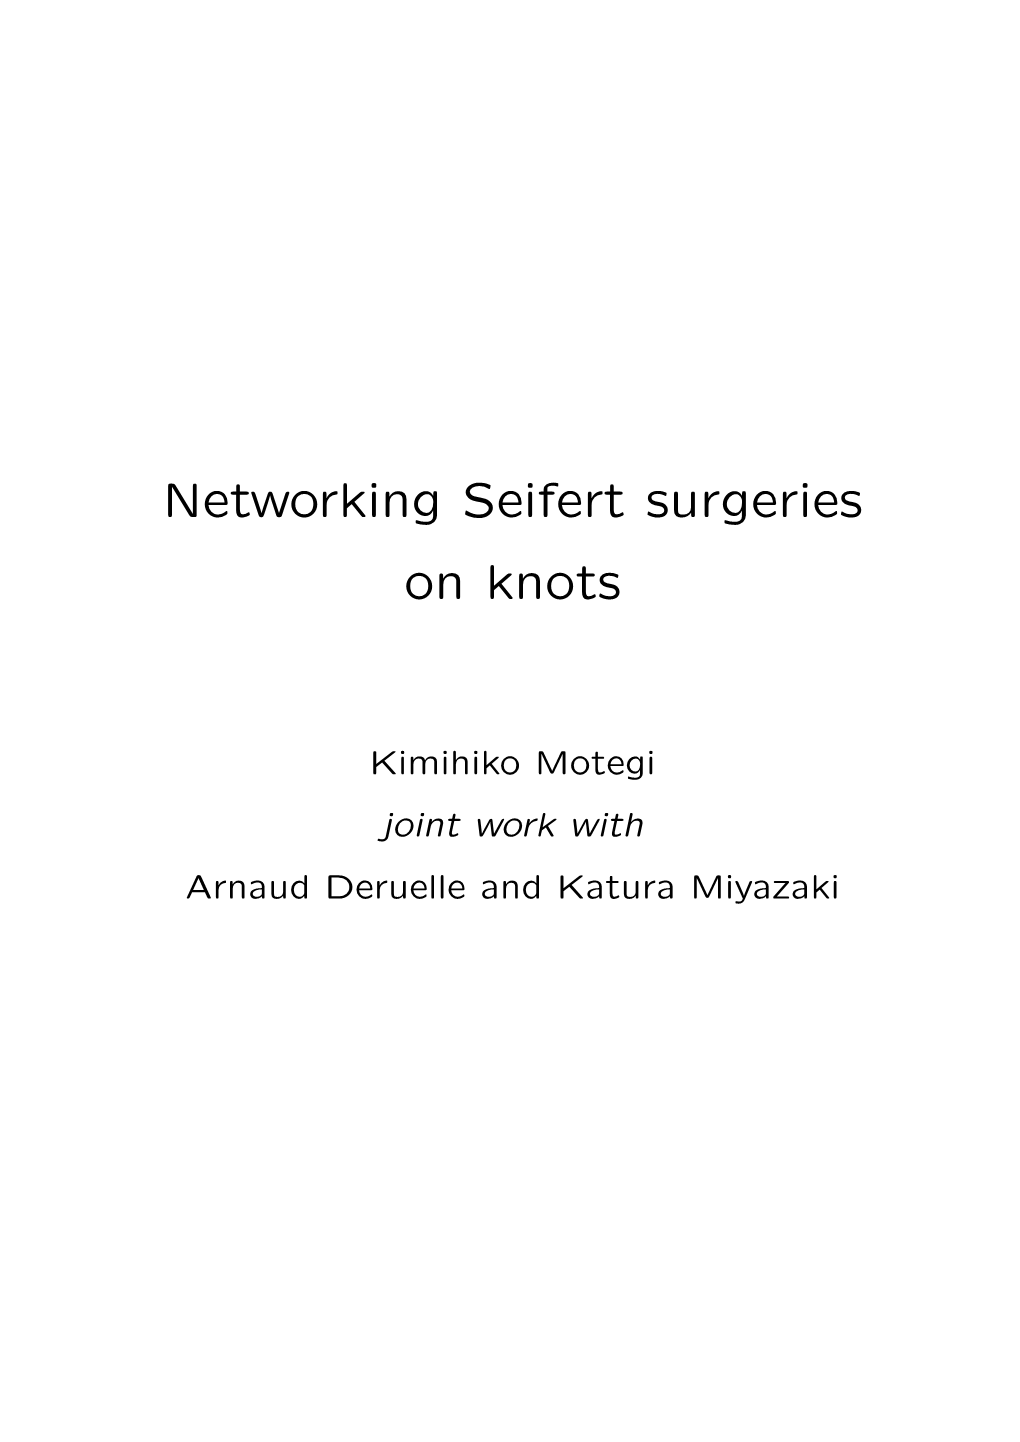 Networking Seifert Surgeries on Knots